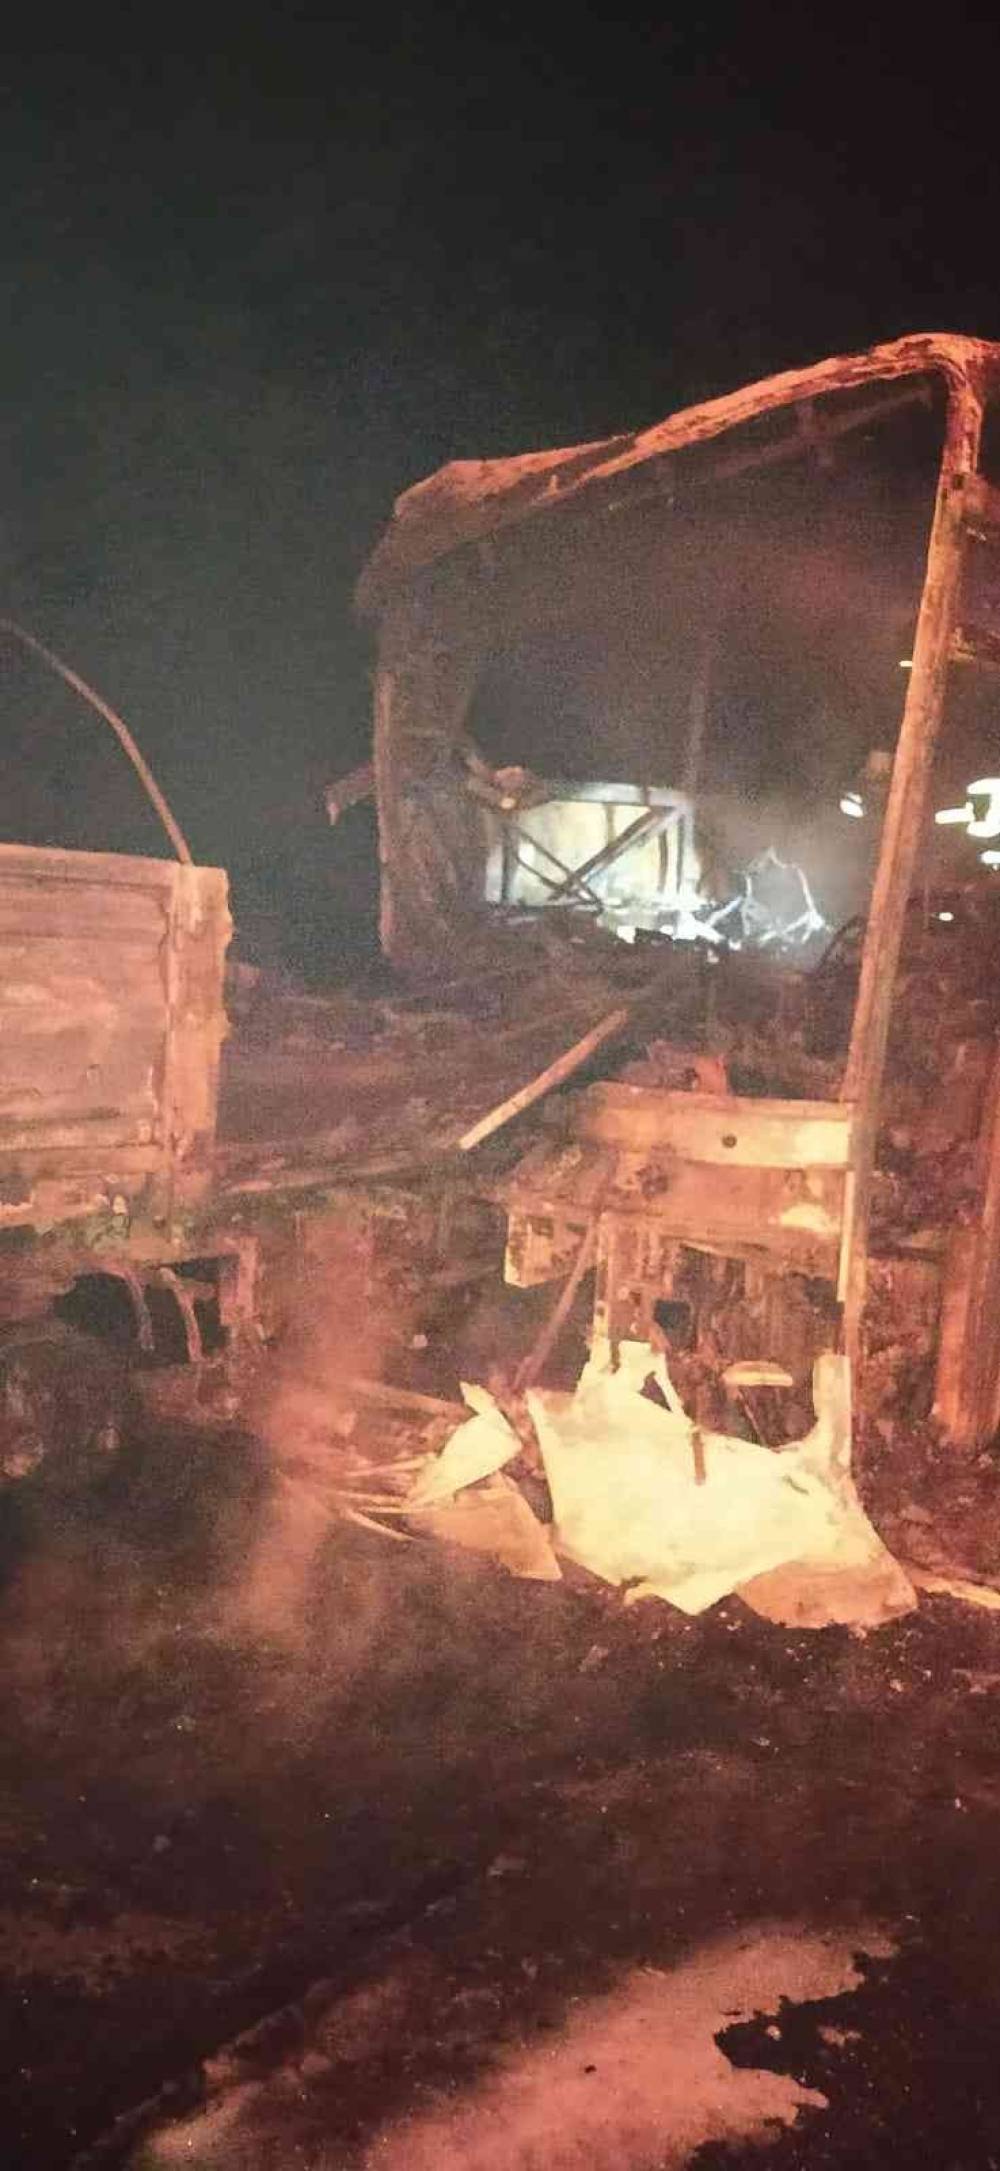 Mersin’de otobüs tıra arkadan çarptı: 3 ölü, 37 yaralı
